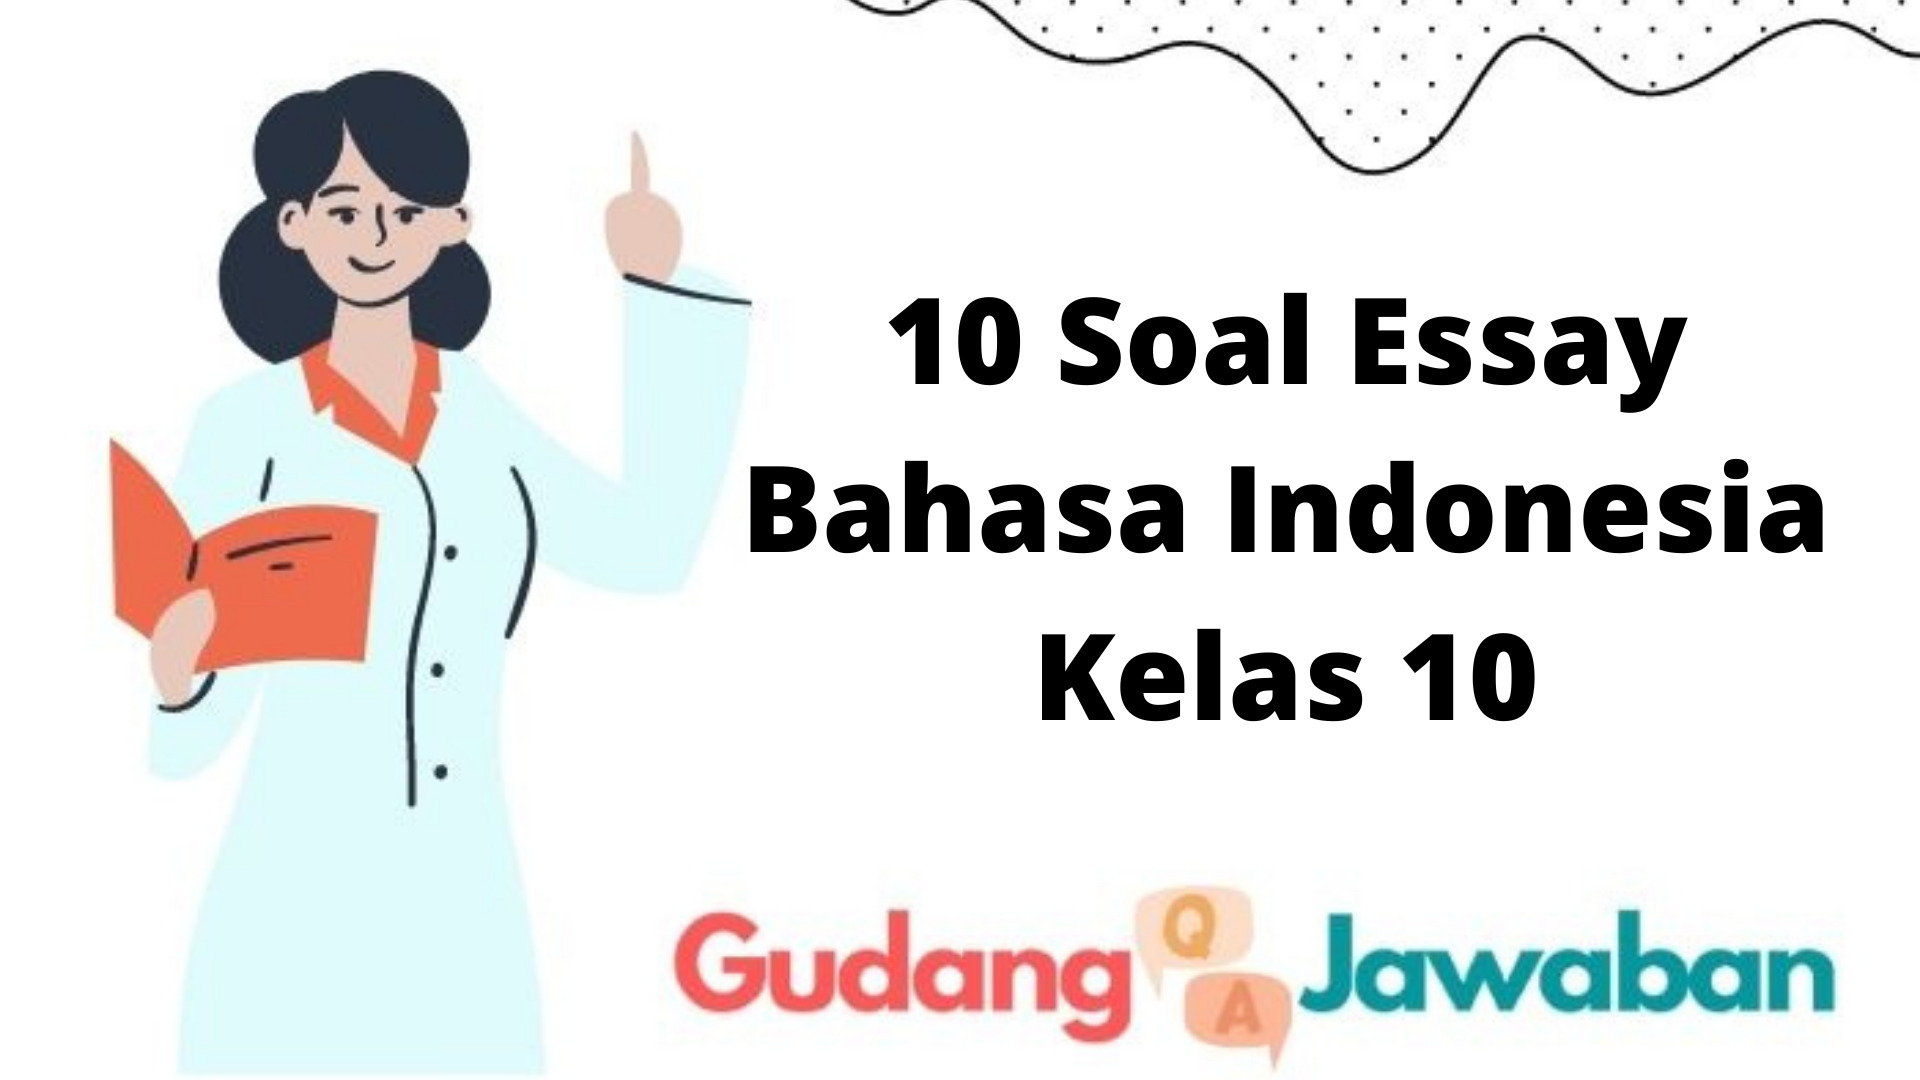 10 Soal Essay Bahasa Indonesia Kelas 10